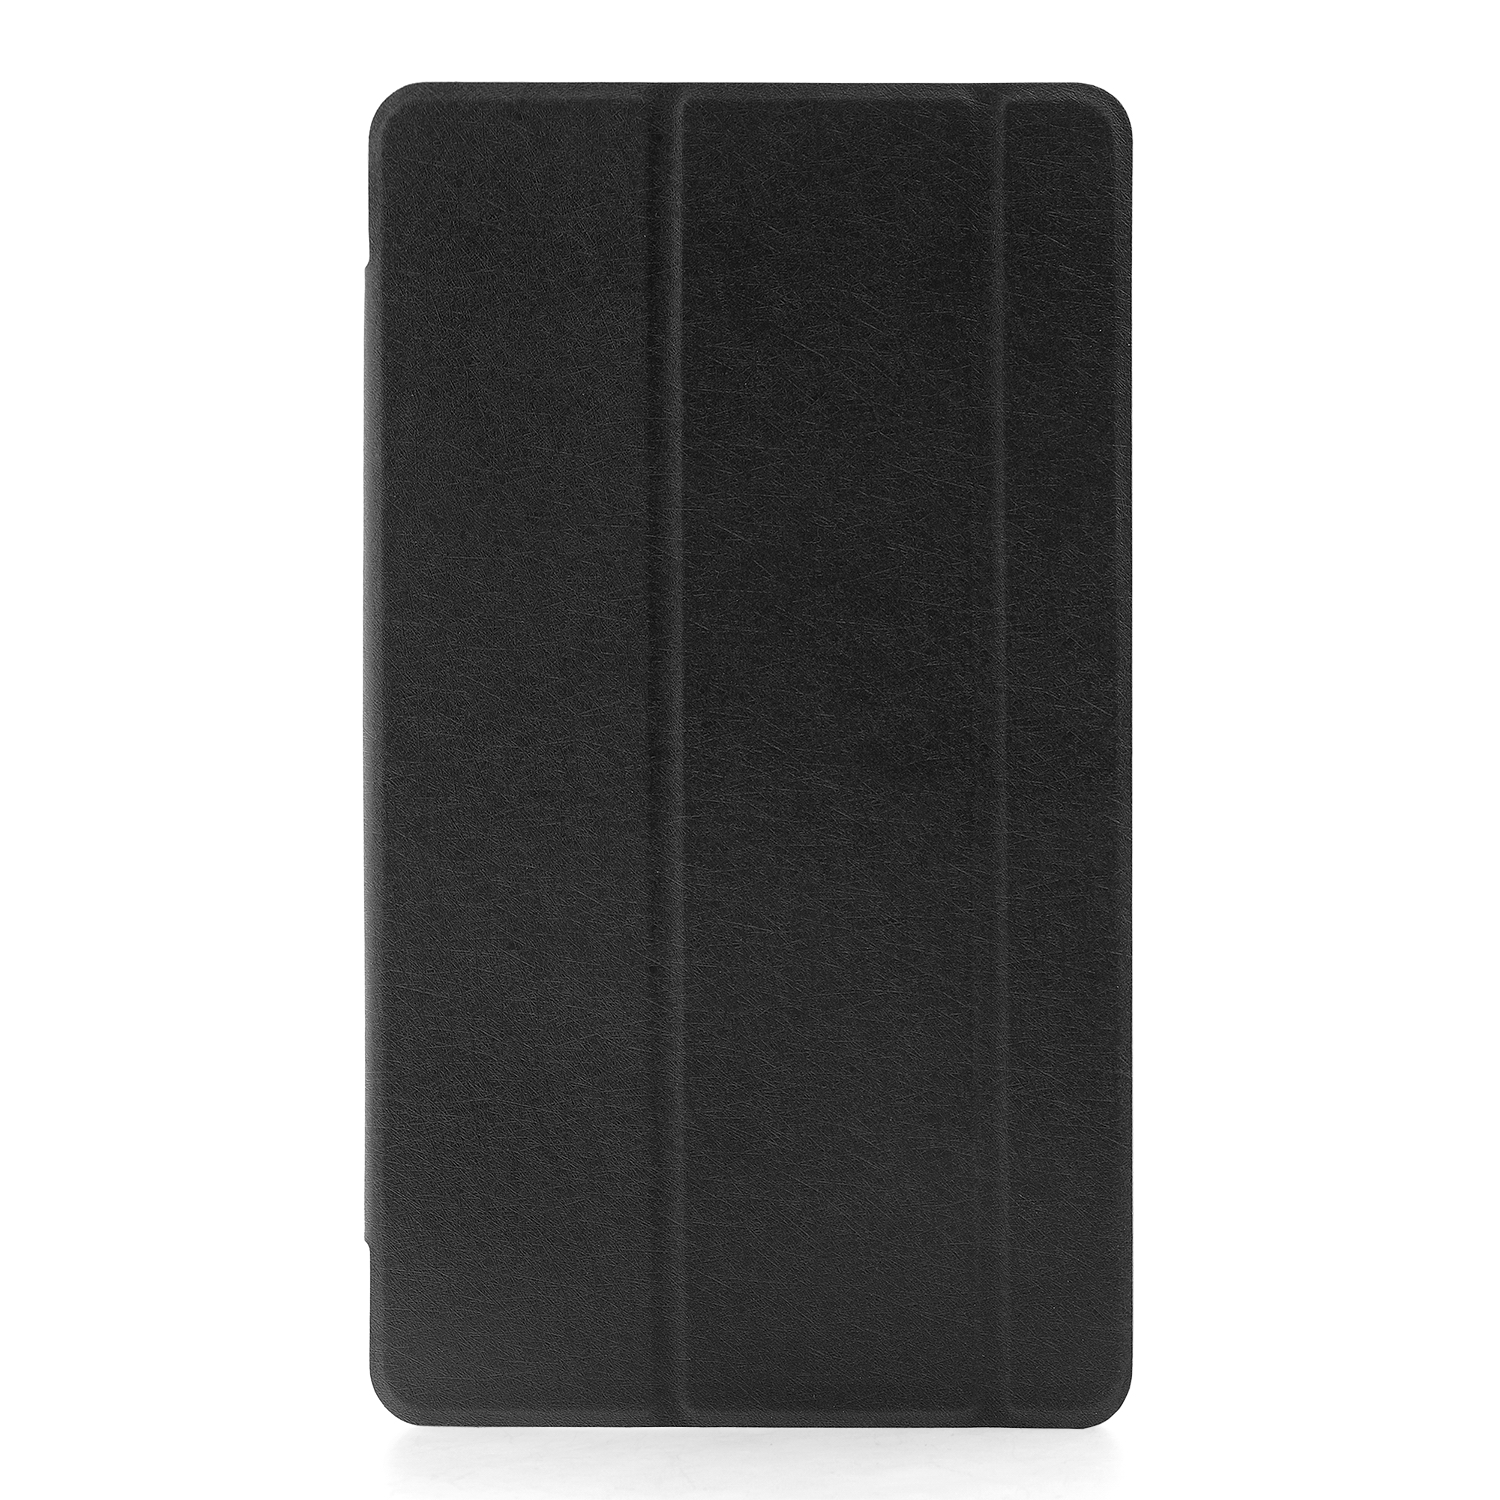 Чехол откидной Huawei MediaPad T3 8.0 Trans Cover черный